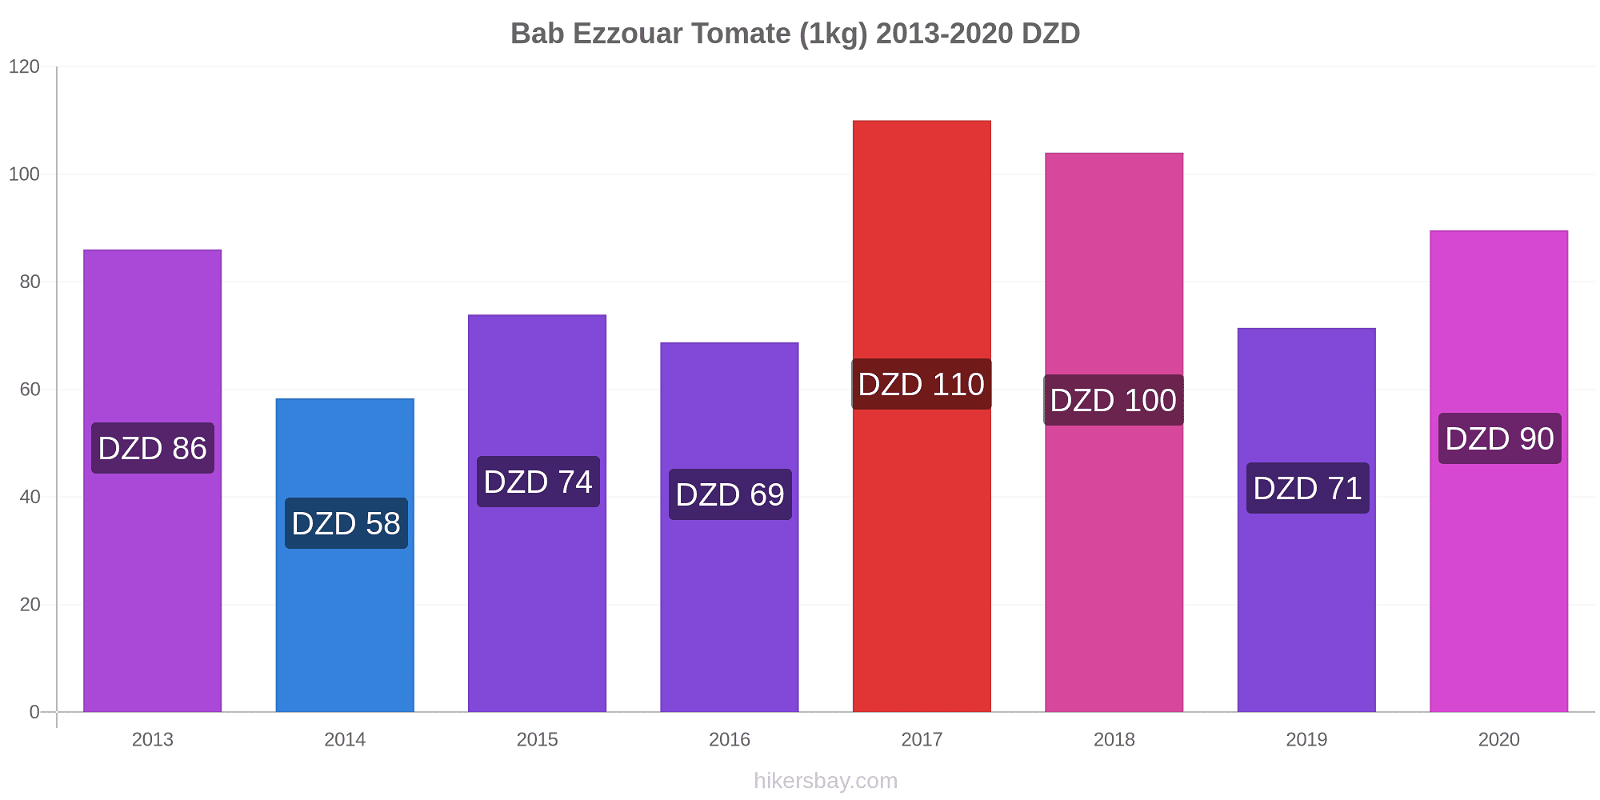 Bab Ezzouar cambios de precios Tomate (1kg) hikersbay.com